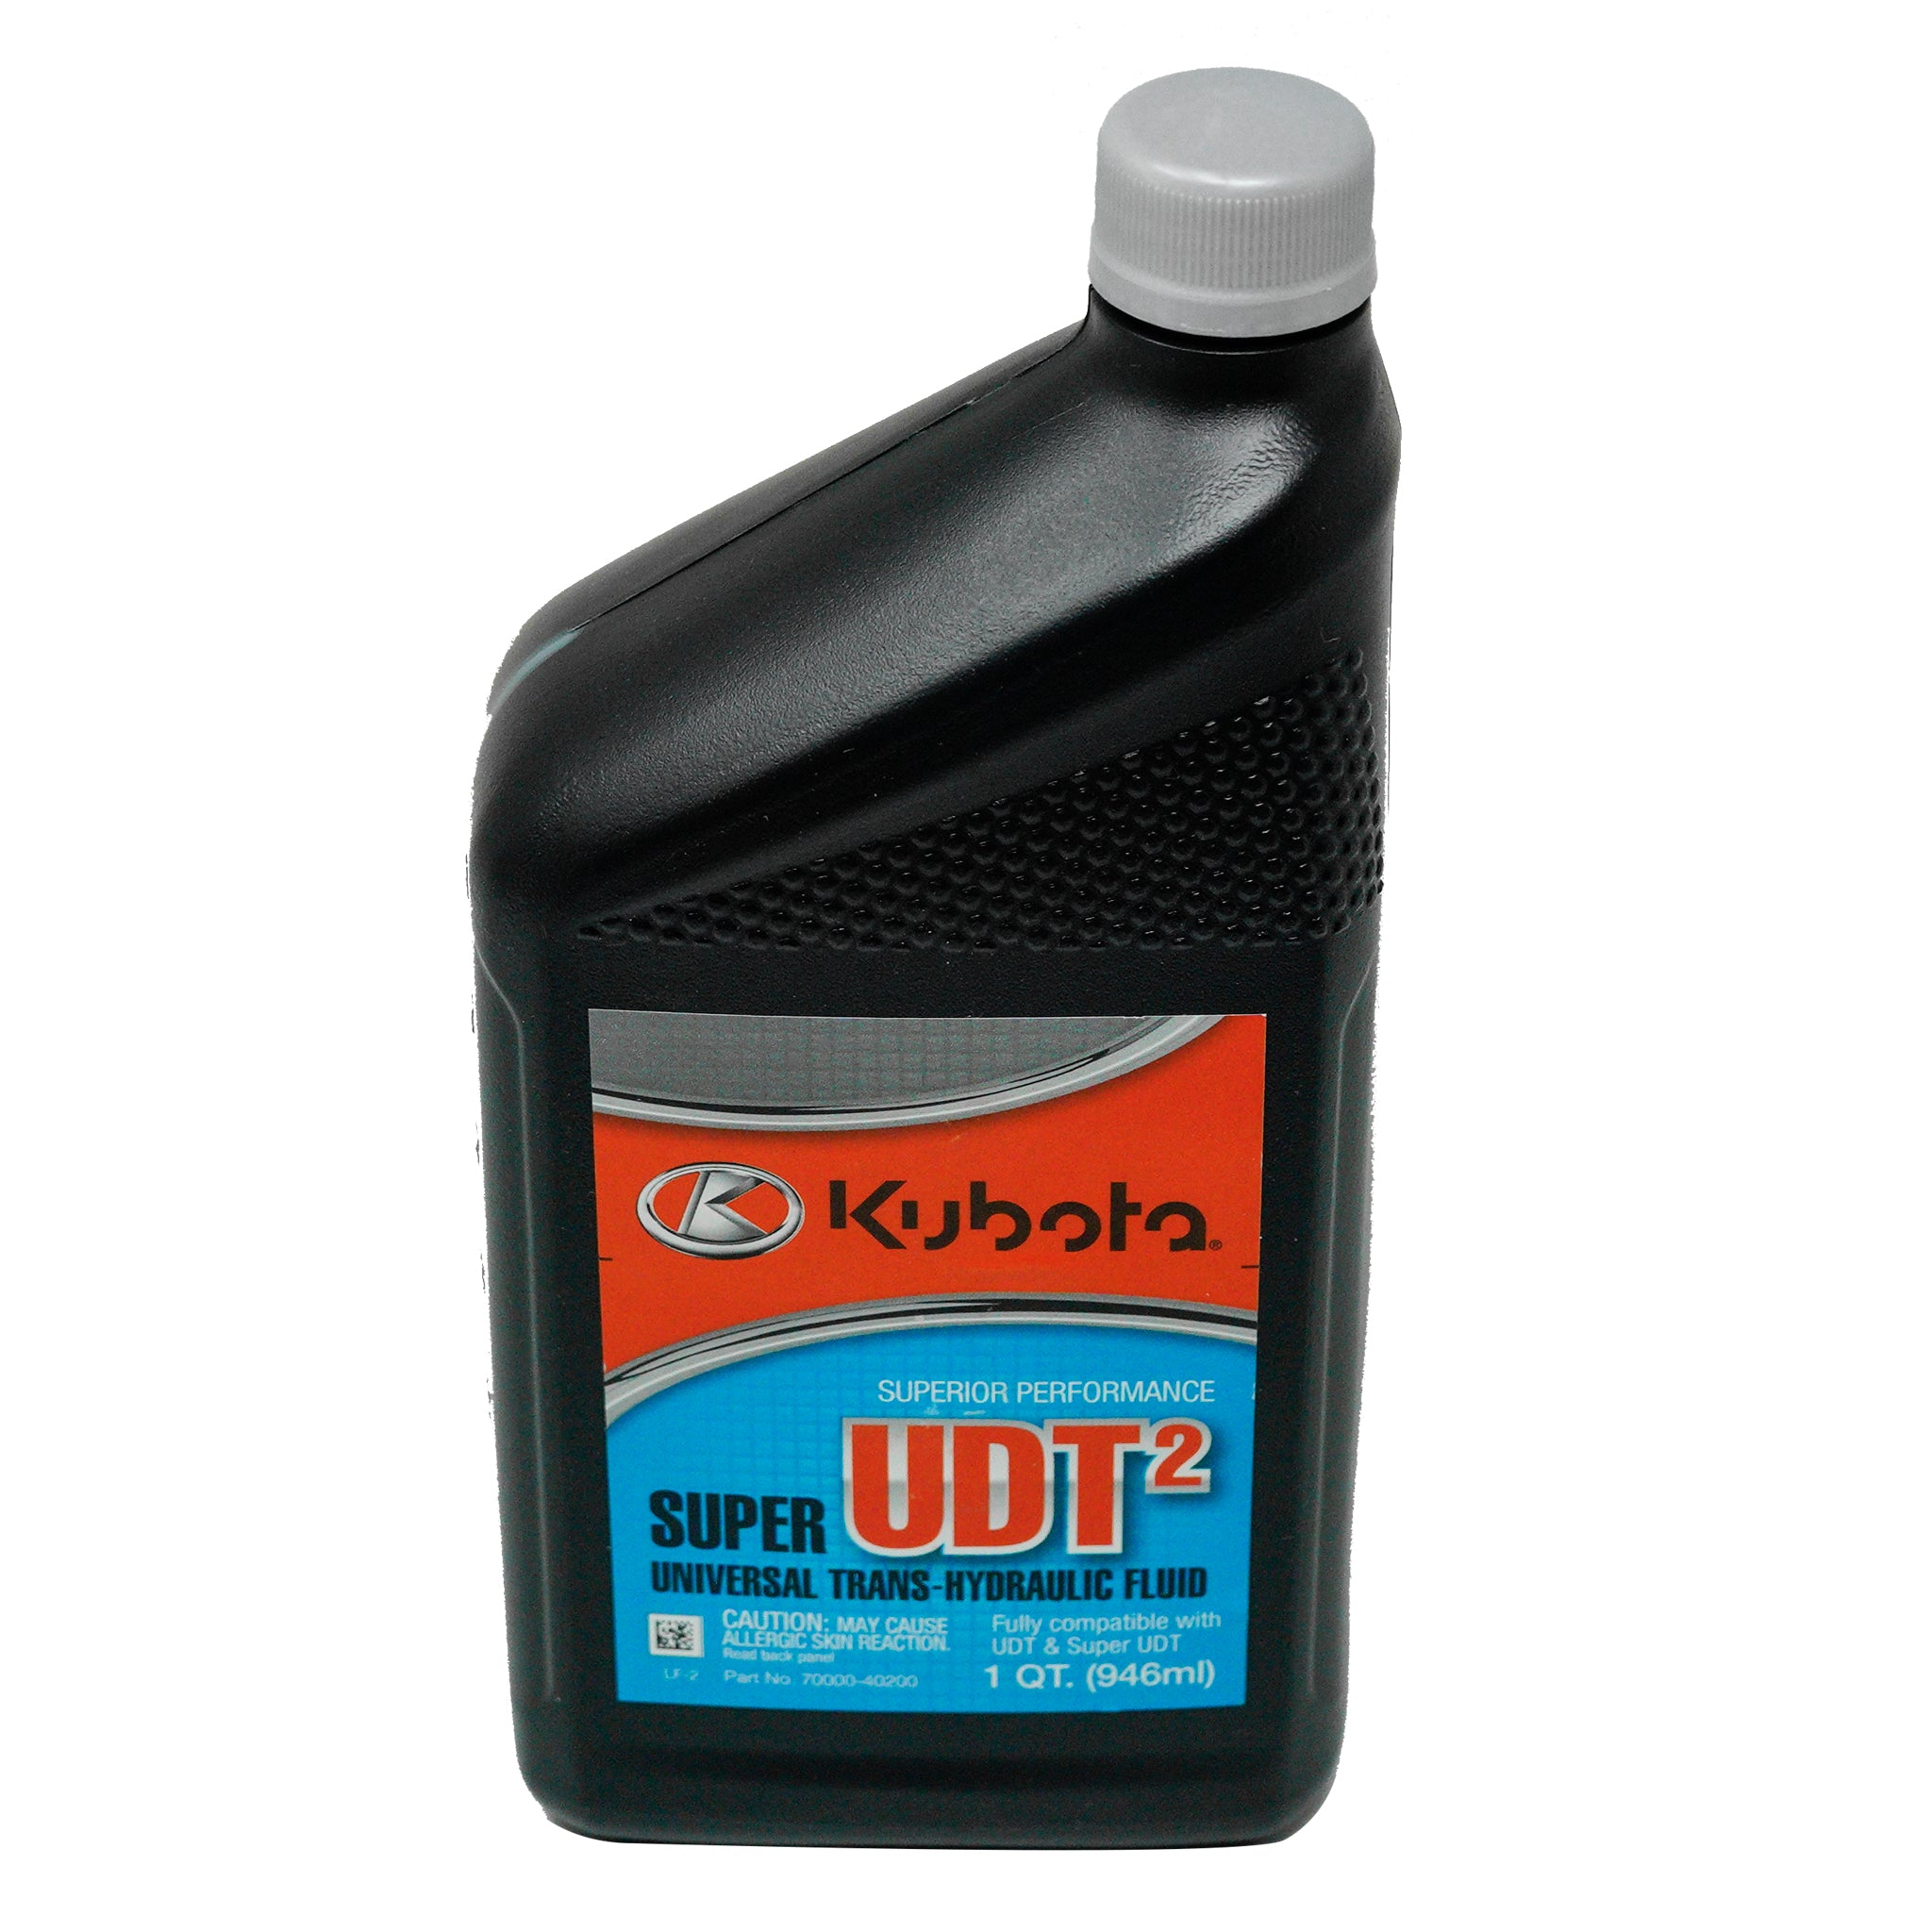 Kubota 70000-40200 Super UDT2 Trans-Hydraulic Fluid 1 Qt.